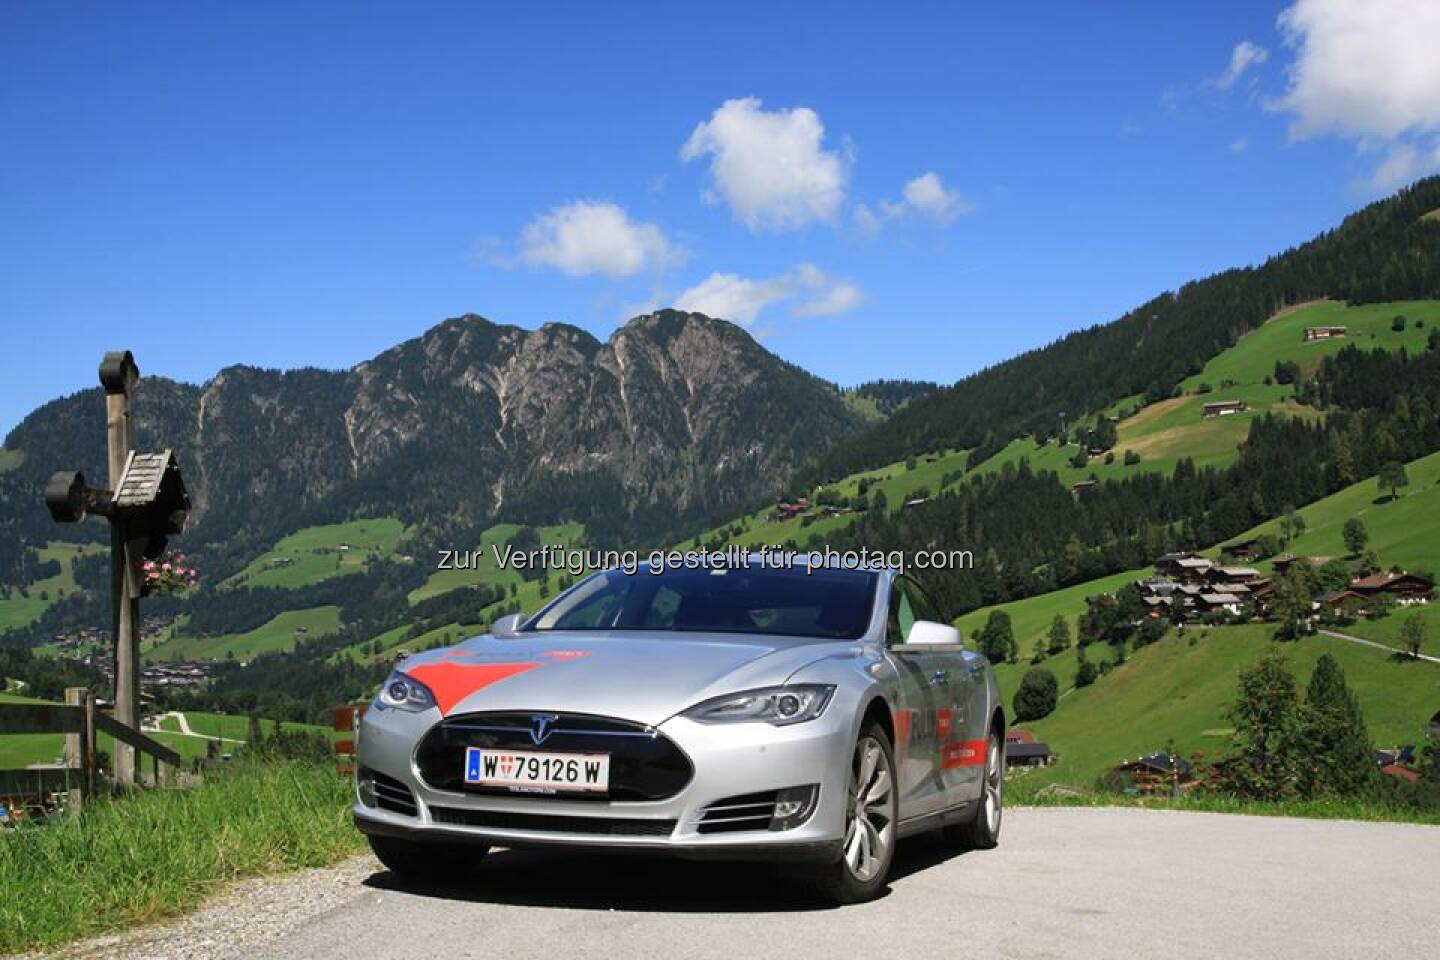 Nach einer Woche in den wunderschönen Bergen Tirols hat das Model S nun das Sheraton Fuschlsee-Salzburg Hotel Jagdhof erreicht. Registrieren Sie sich für eine Testfahrt:  www.teslamotors.com/de_DE/fullycharged  Source: http://facebook.com/teslamotors